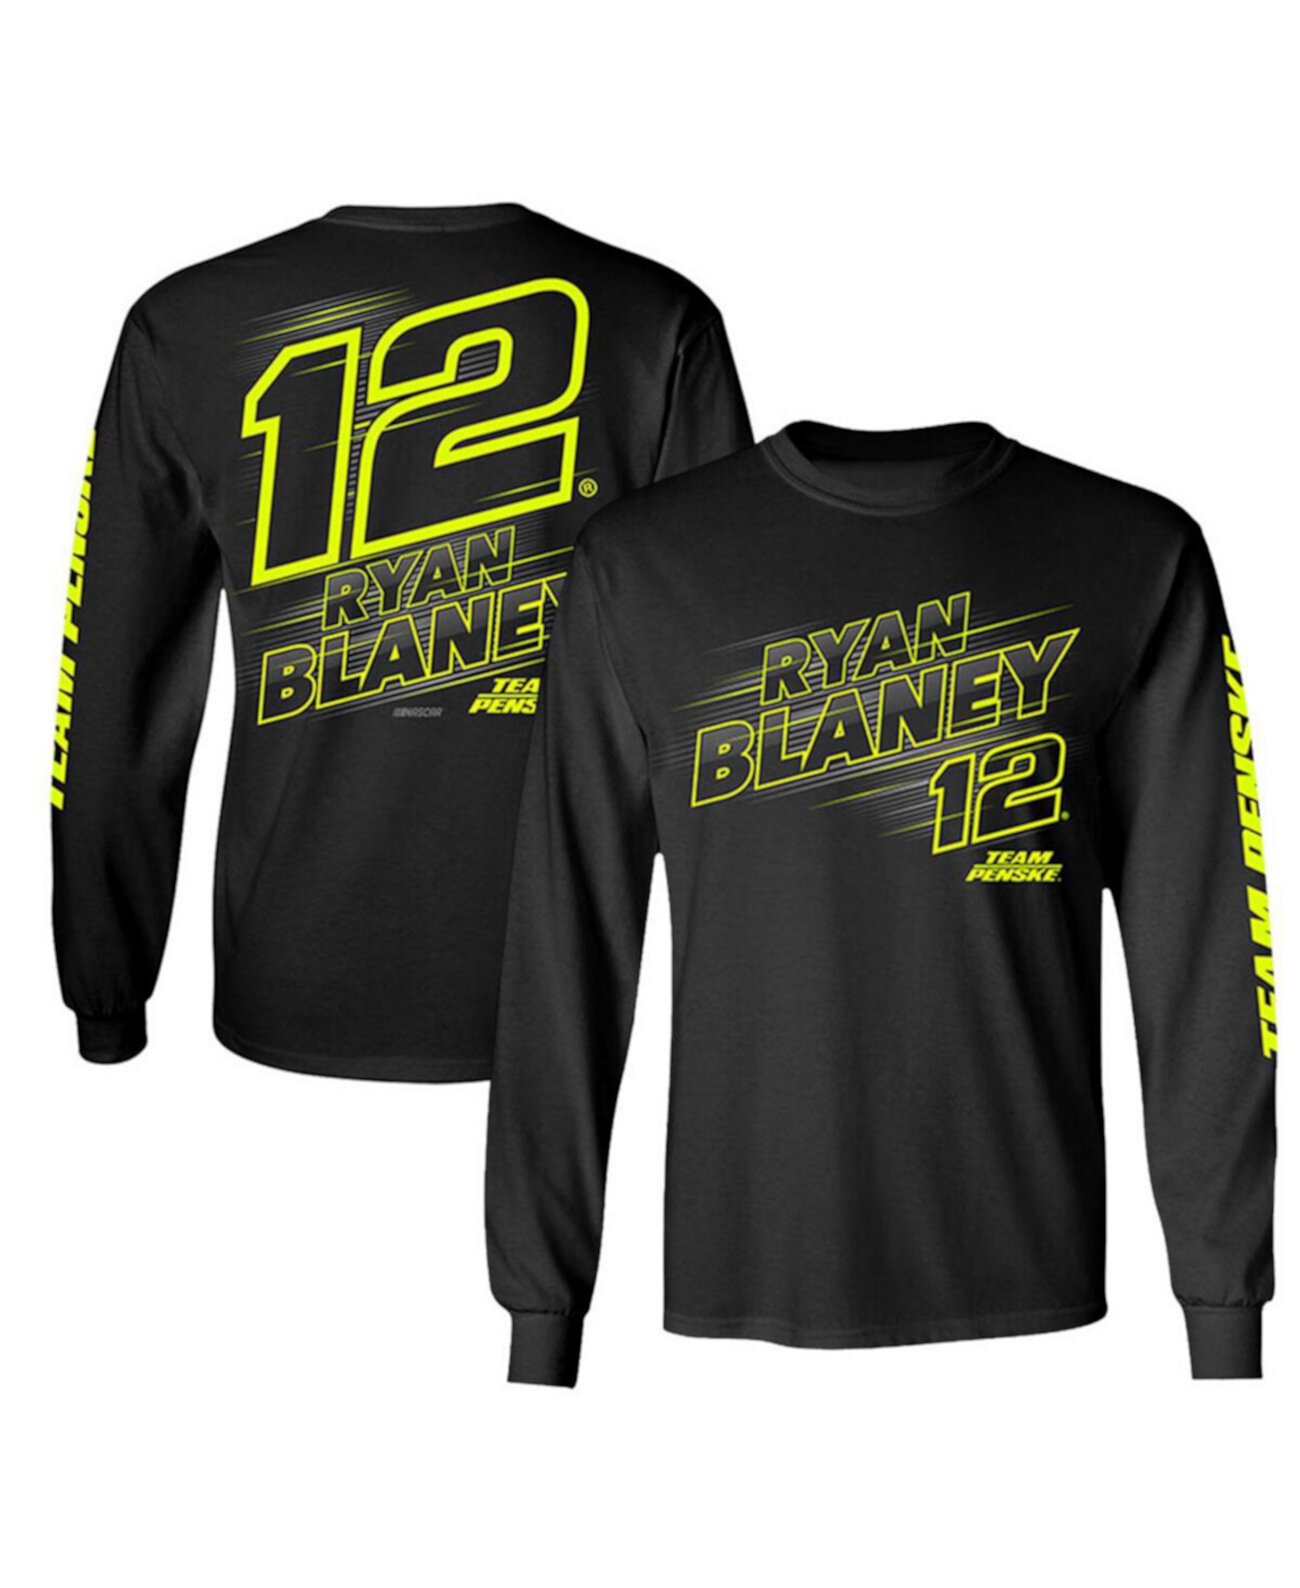 Мужская черная футболка с длинным рукавом Ryan Blaney Lifestyle Team Penske